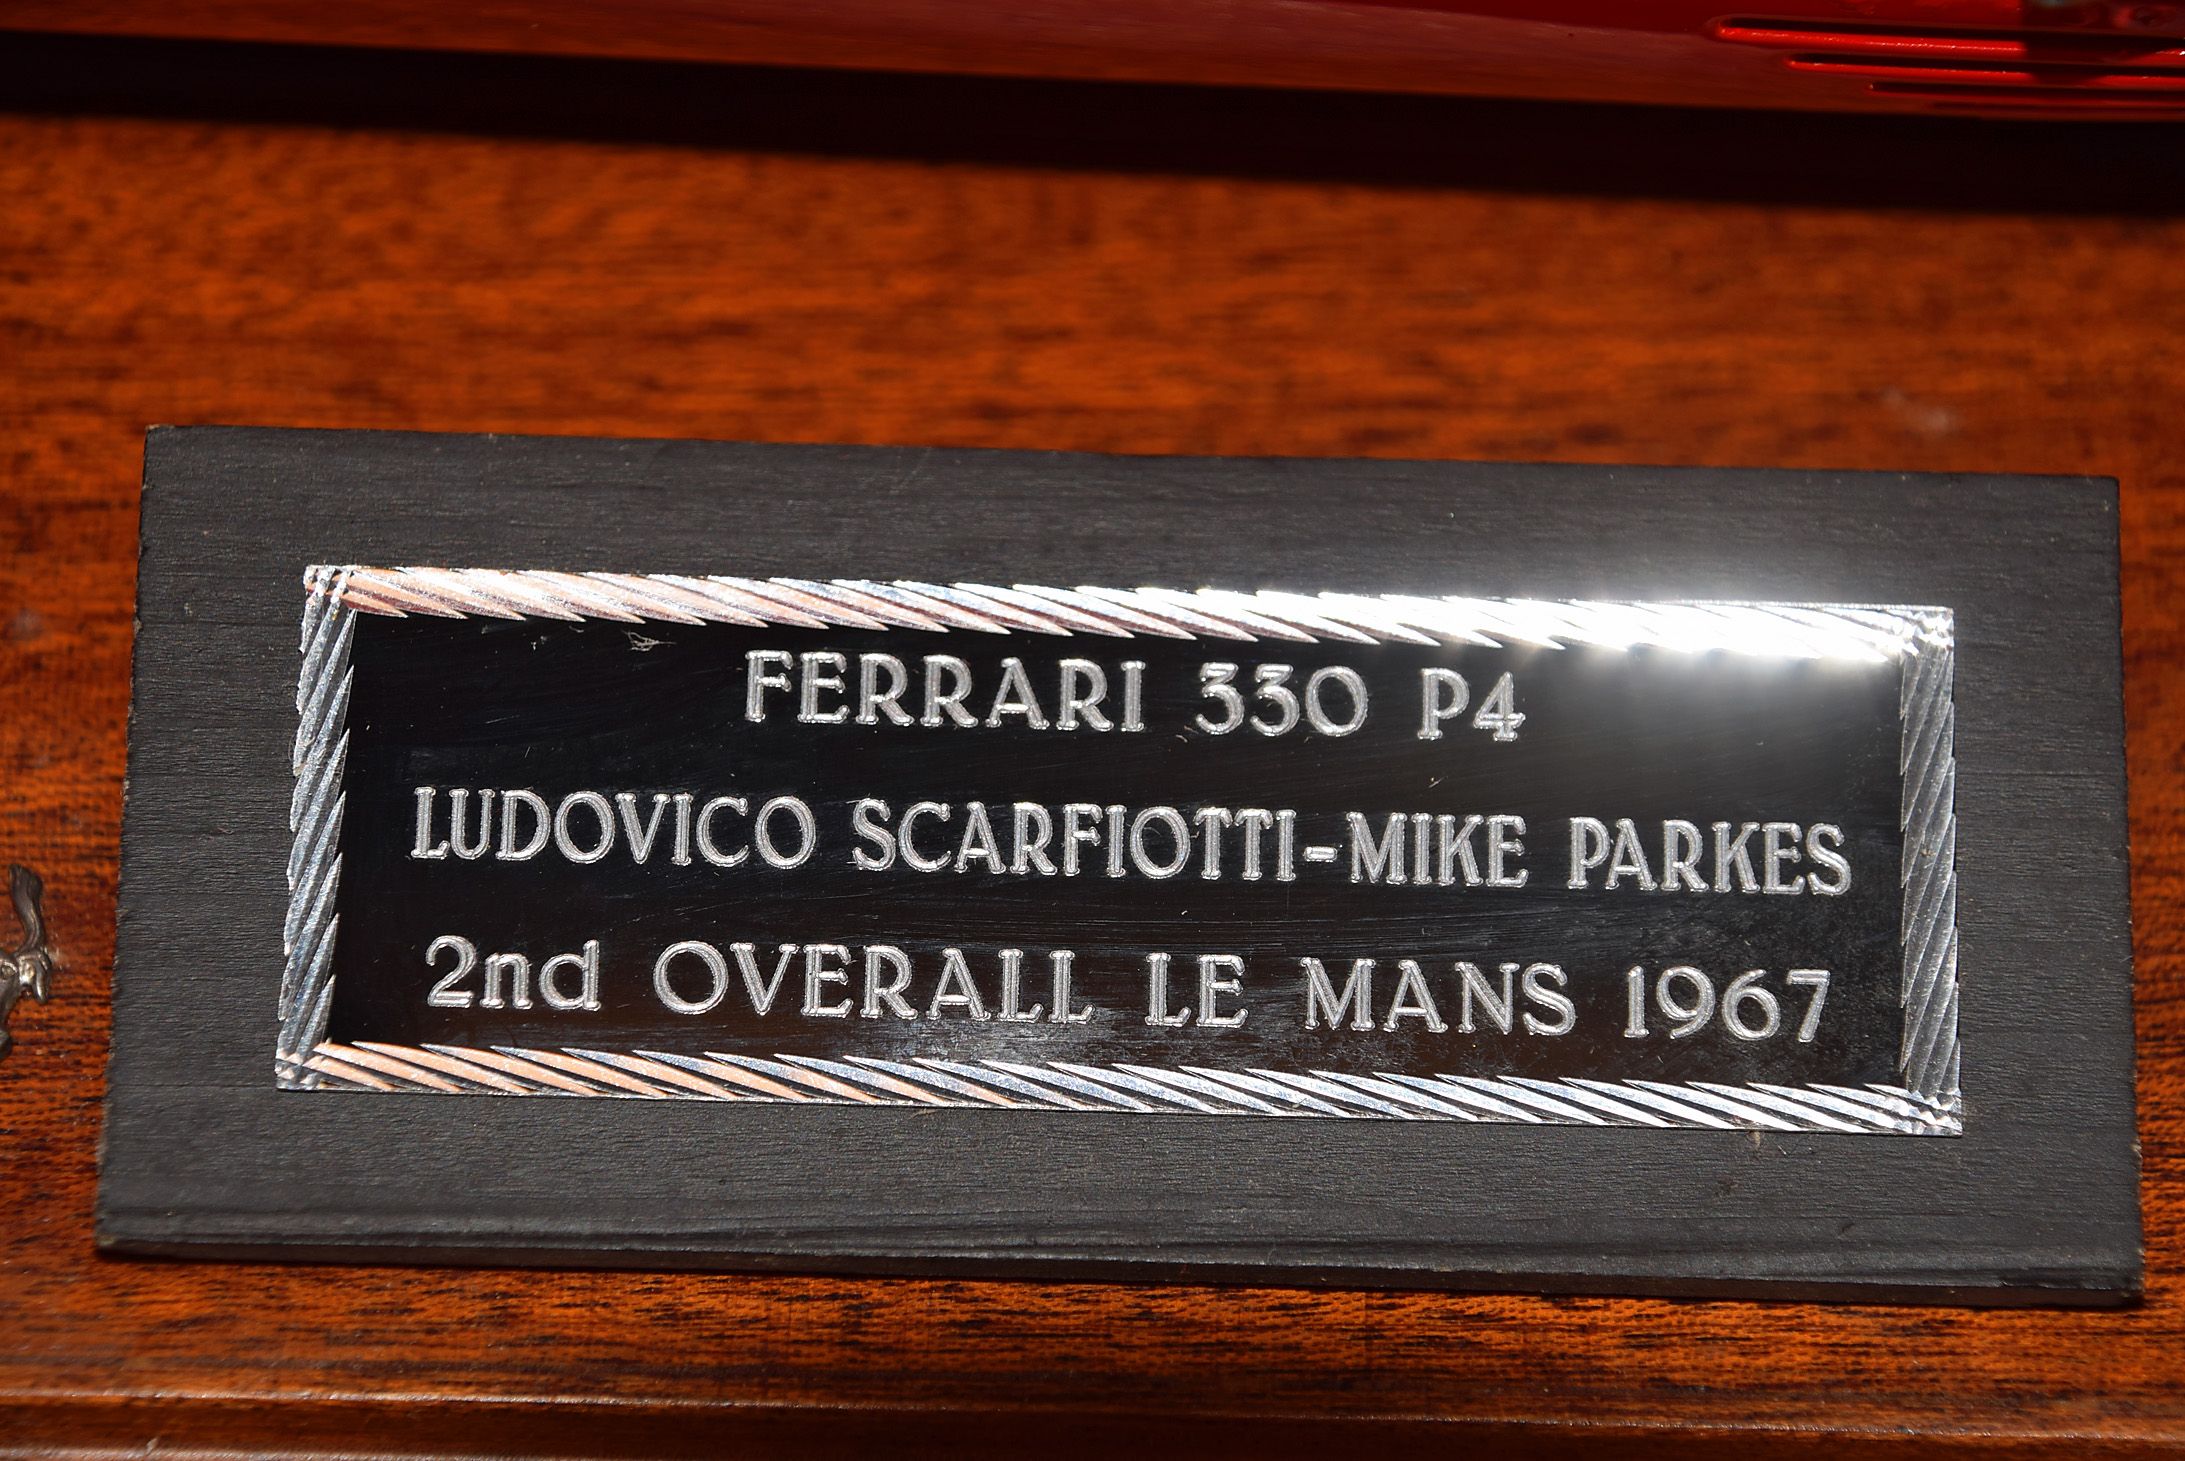 Ferrari 330 P4 by M. Conti